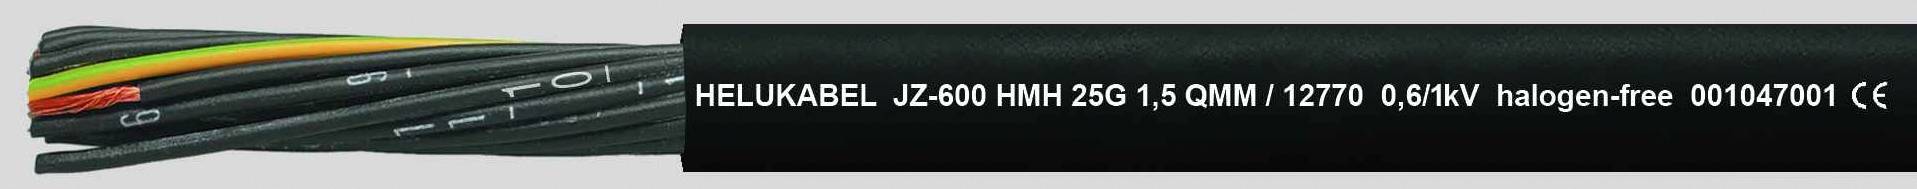 HELUKABEL JZ-600 HMH Steuerleitung 3 G 1.50 mm² Schwarz 12760-1000 1000 m